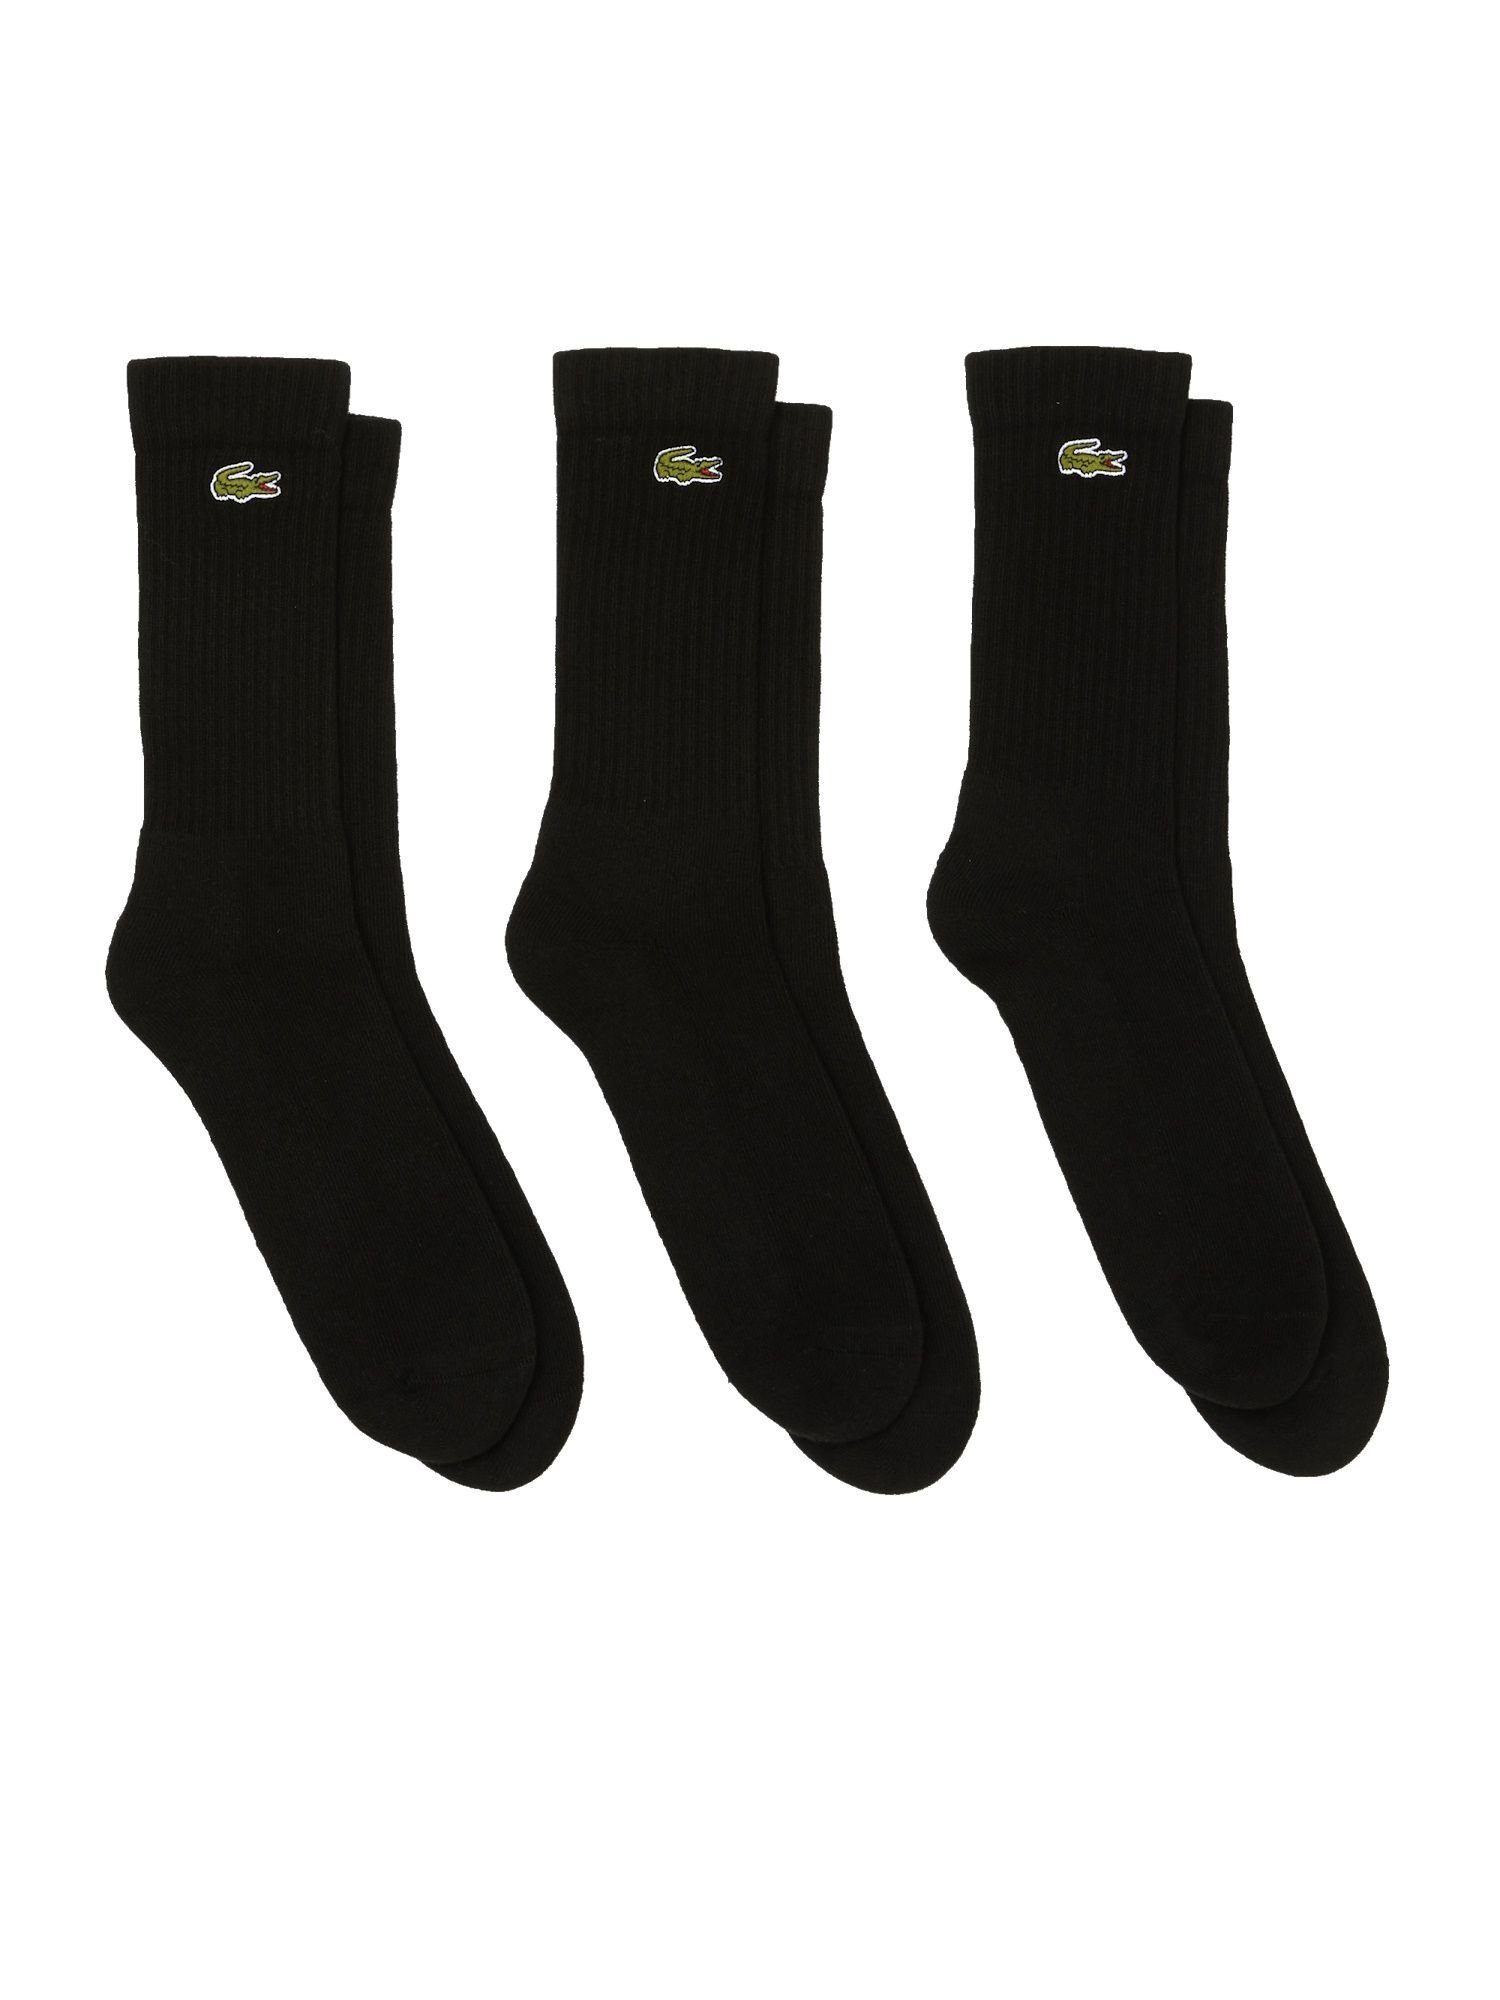 Lacoste schwarz Permanent Socken Dreierpack Socken (3-Paar) hohe Socken Offer